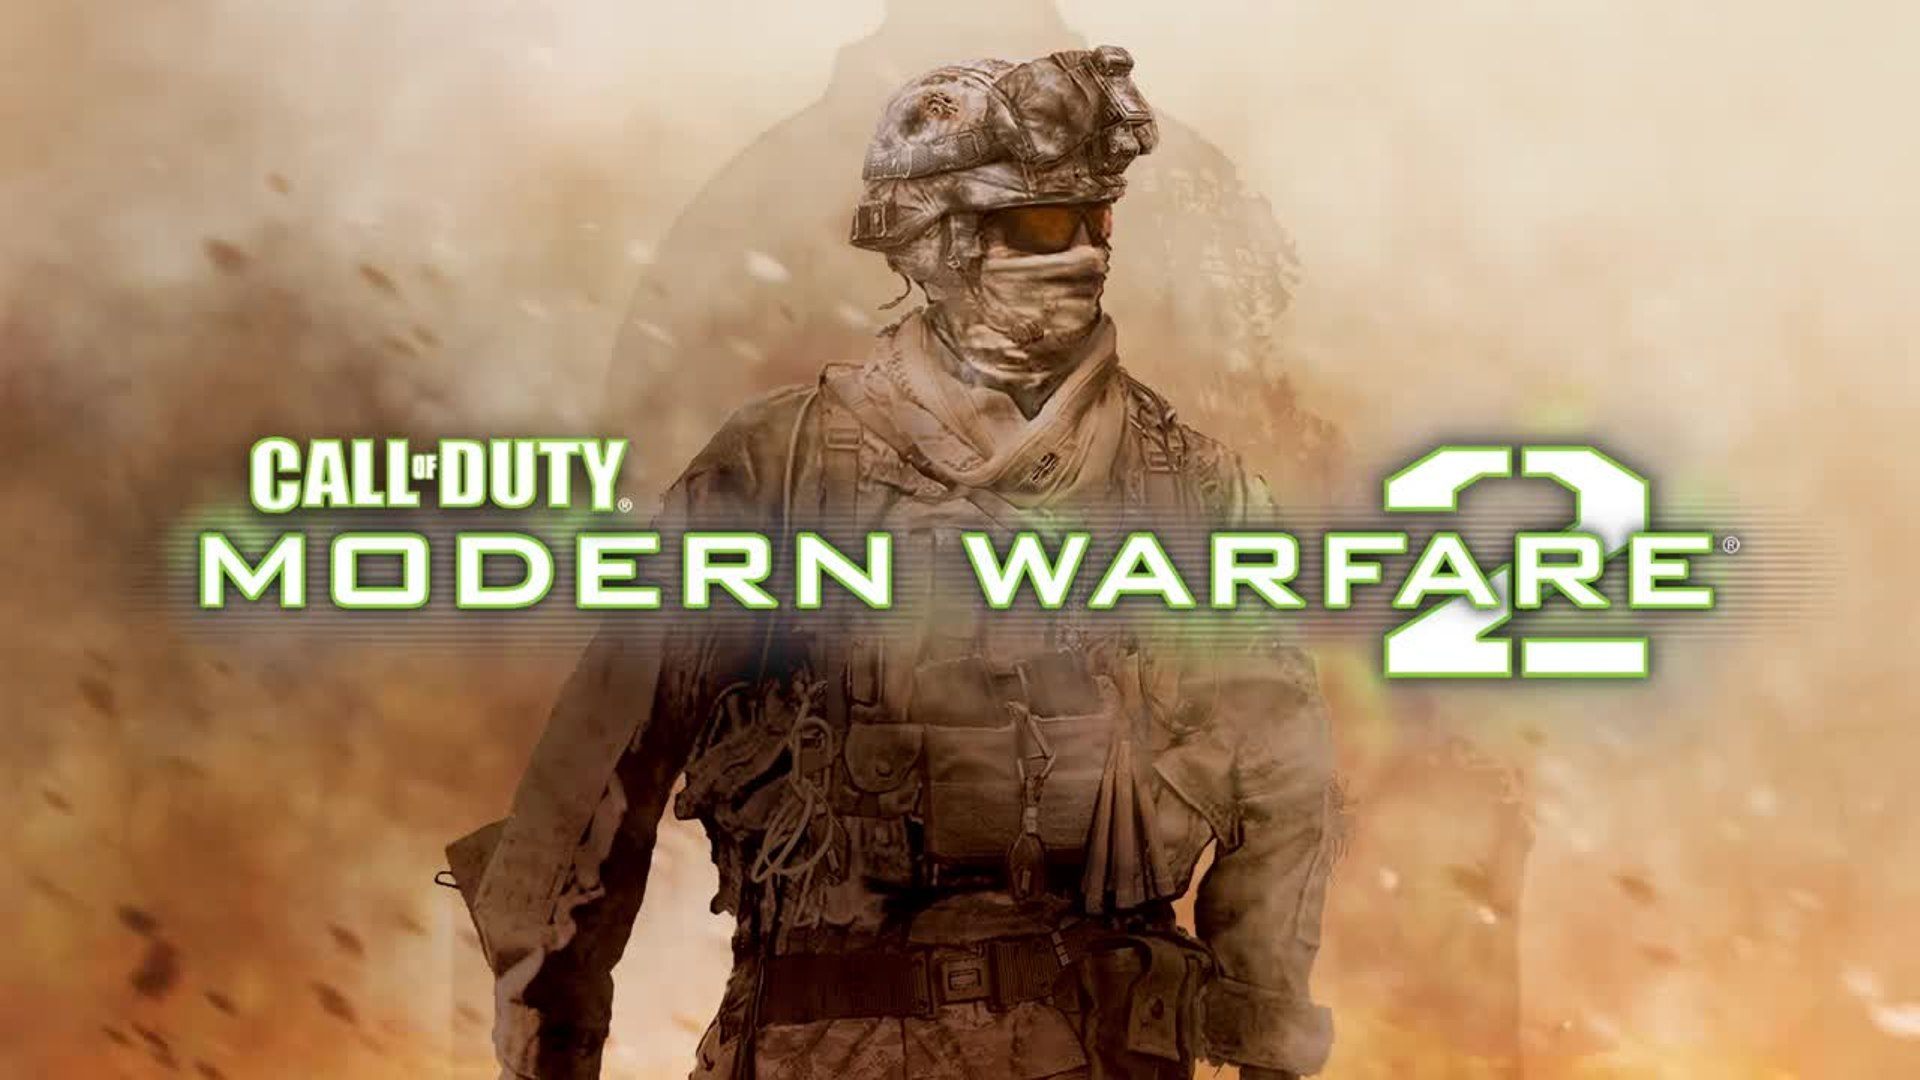 دانلود نسخه فشرده بازی Call of Duty: Modern Warfare 2 با حجم 3.66 گیگابایت